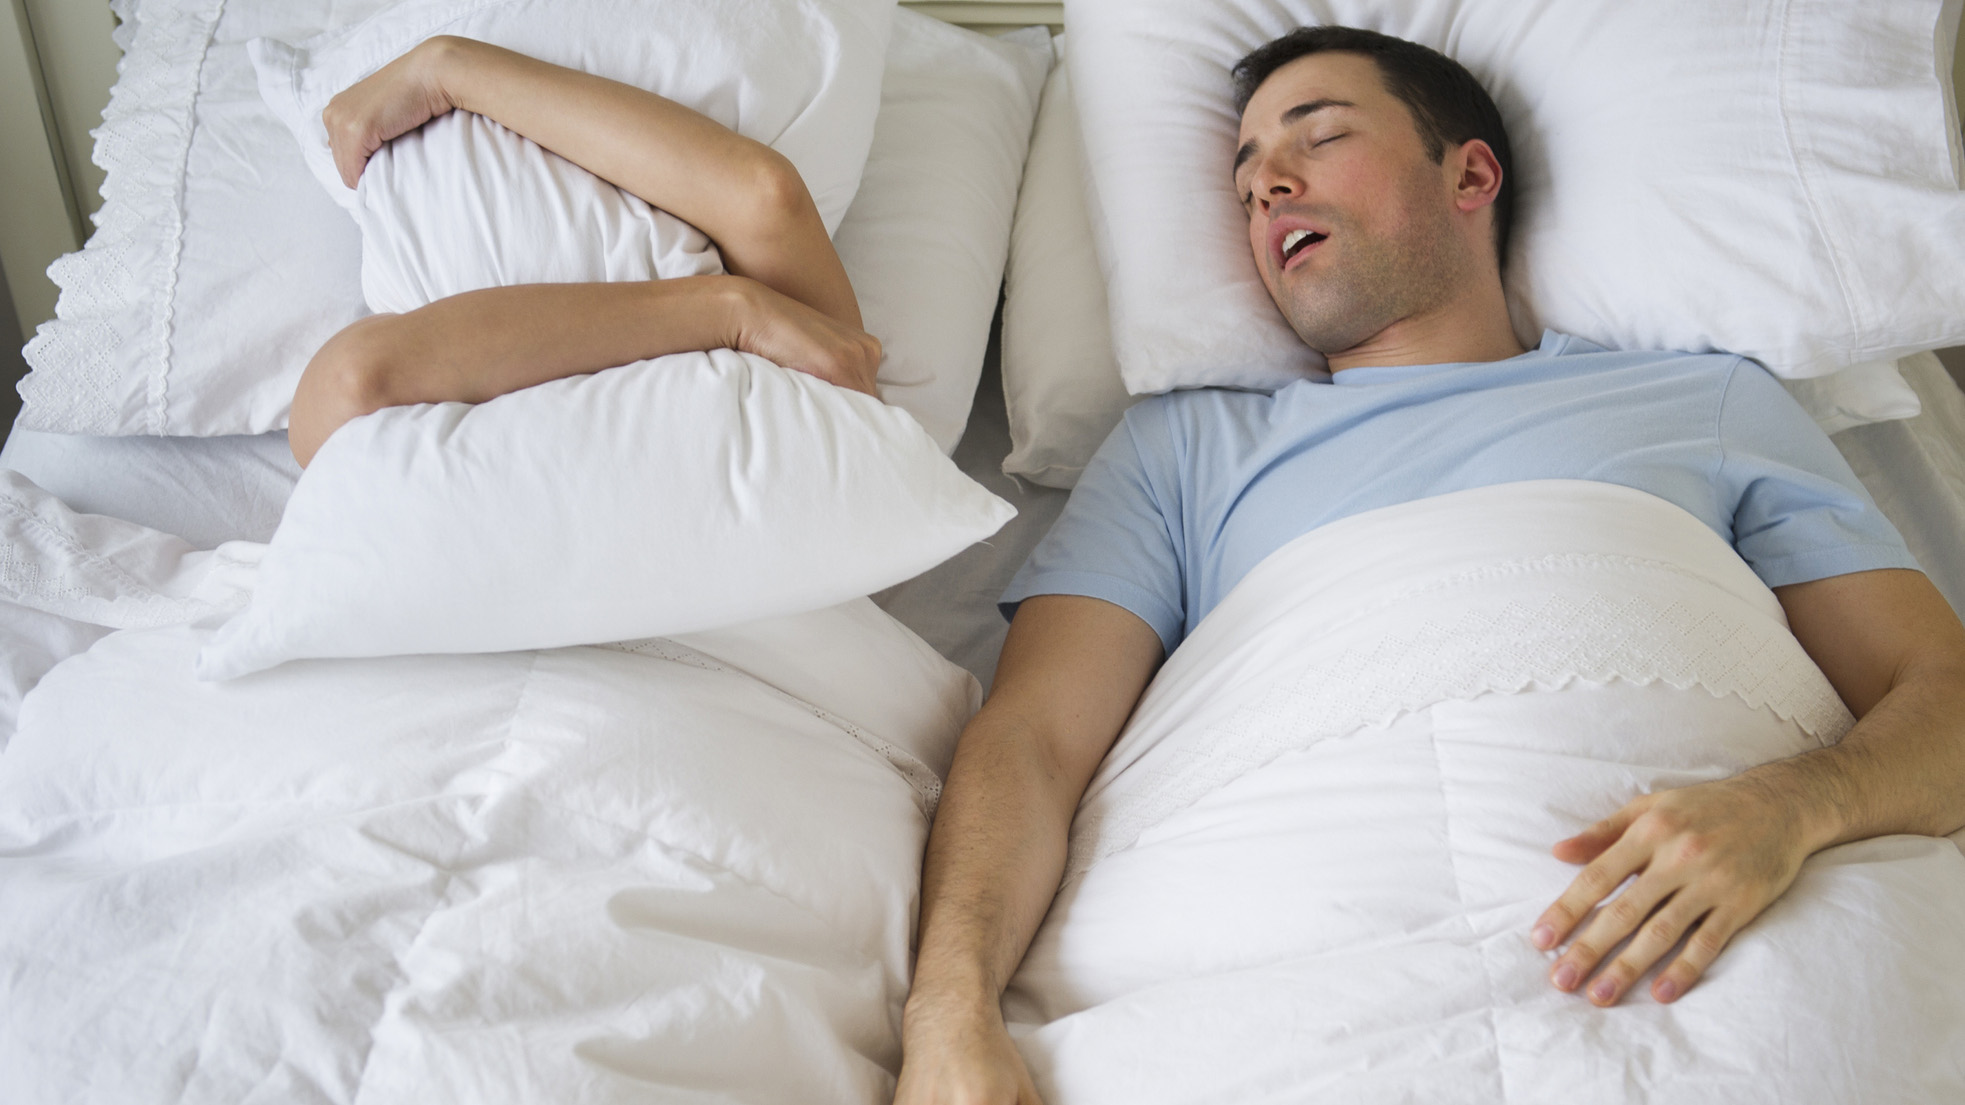 Мужчина в синей футболке храпит рядом со своей партнершей в постели, которая закрывает лицо подушкой.